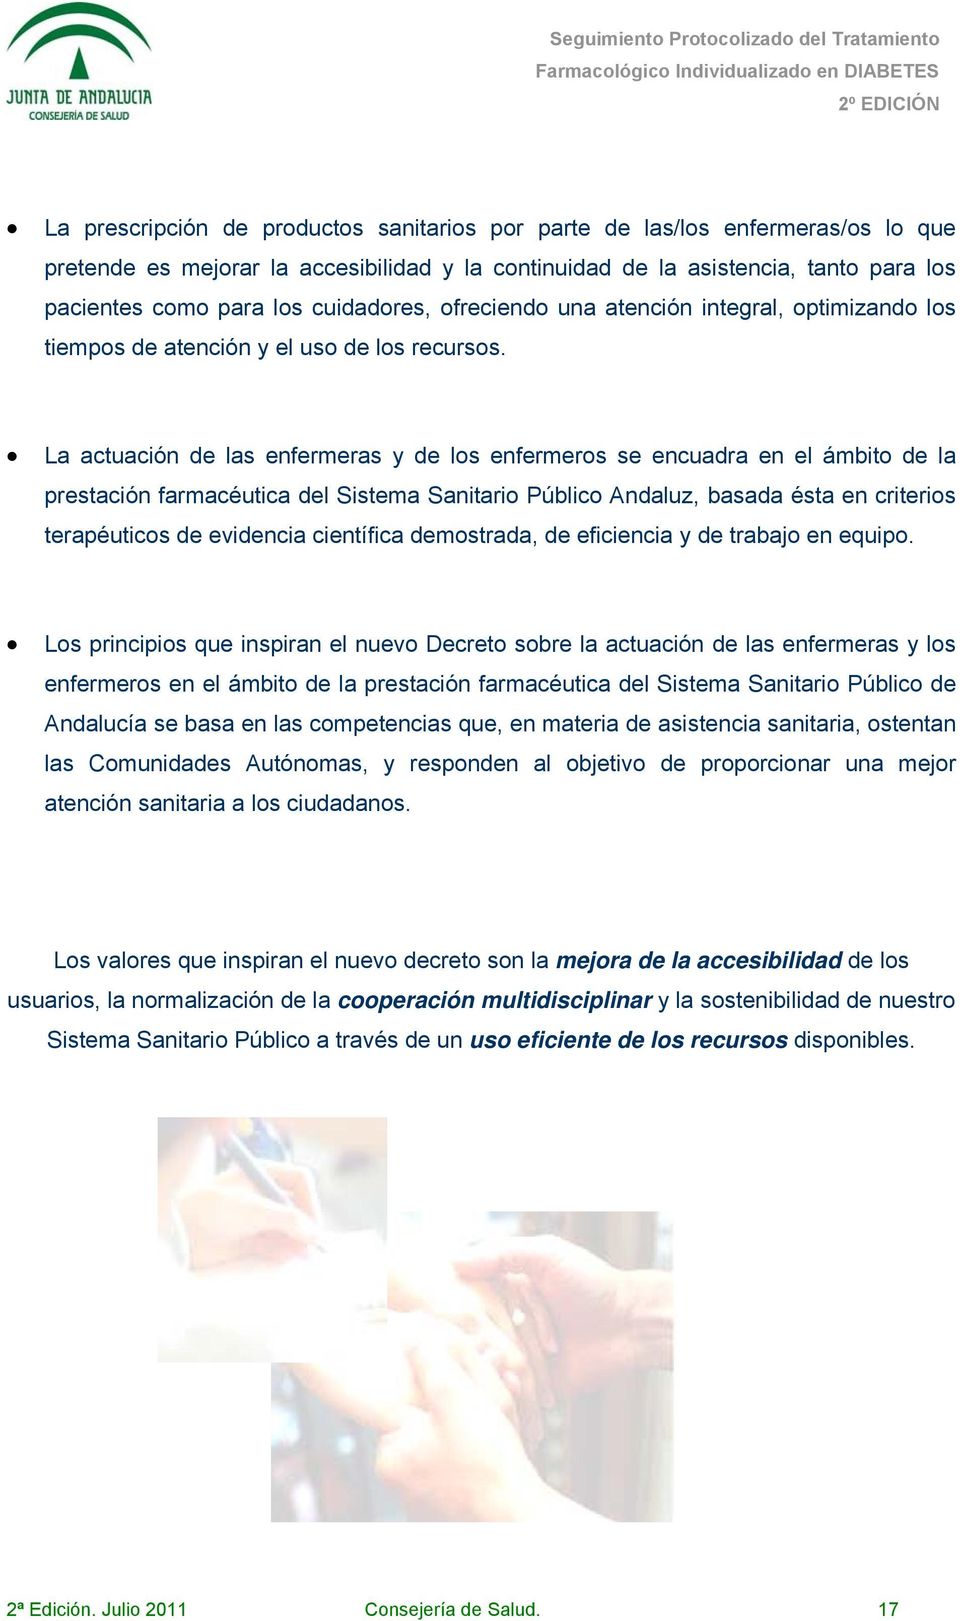 La actuación de las enfermeras y de los enfermeros se encuadra en el ámbito de la prestación farmacéutica del Sistema Sanitario Público Andaluz, basada ésta en criterios terapéuticos de evidencia